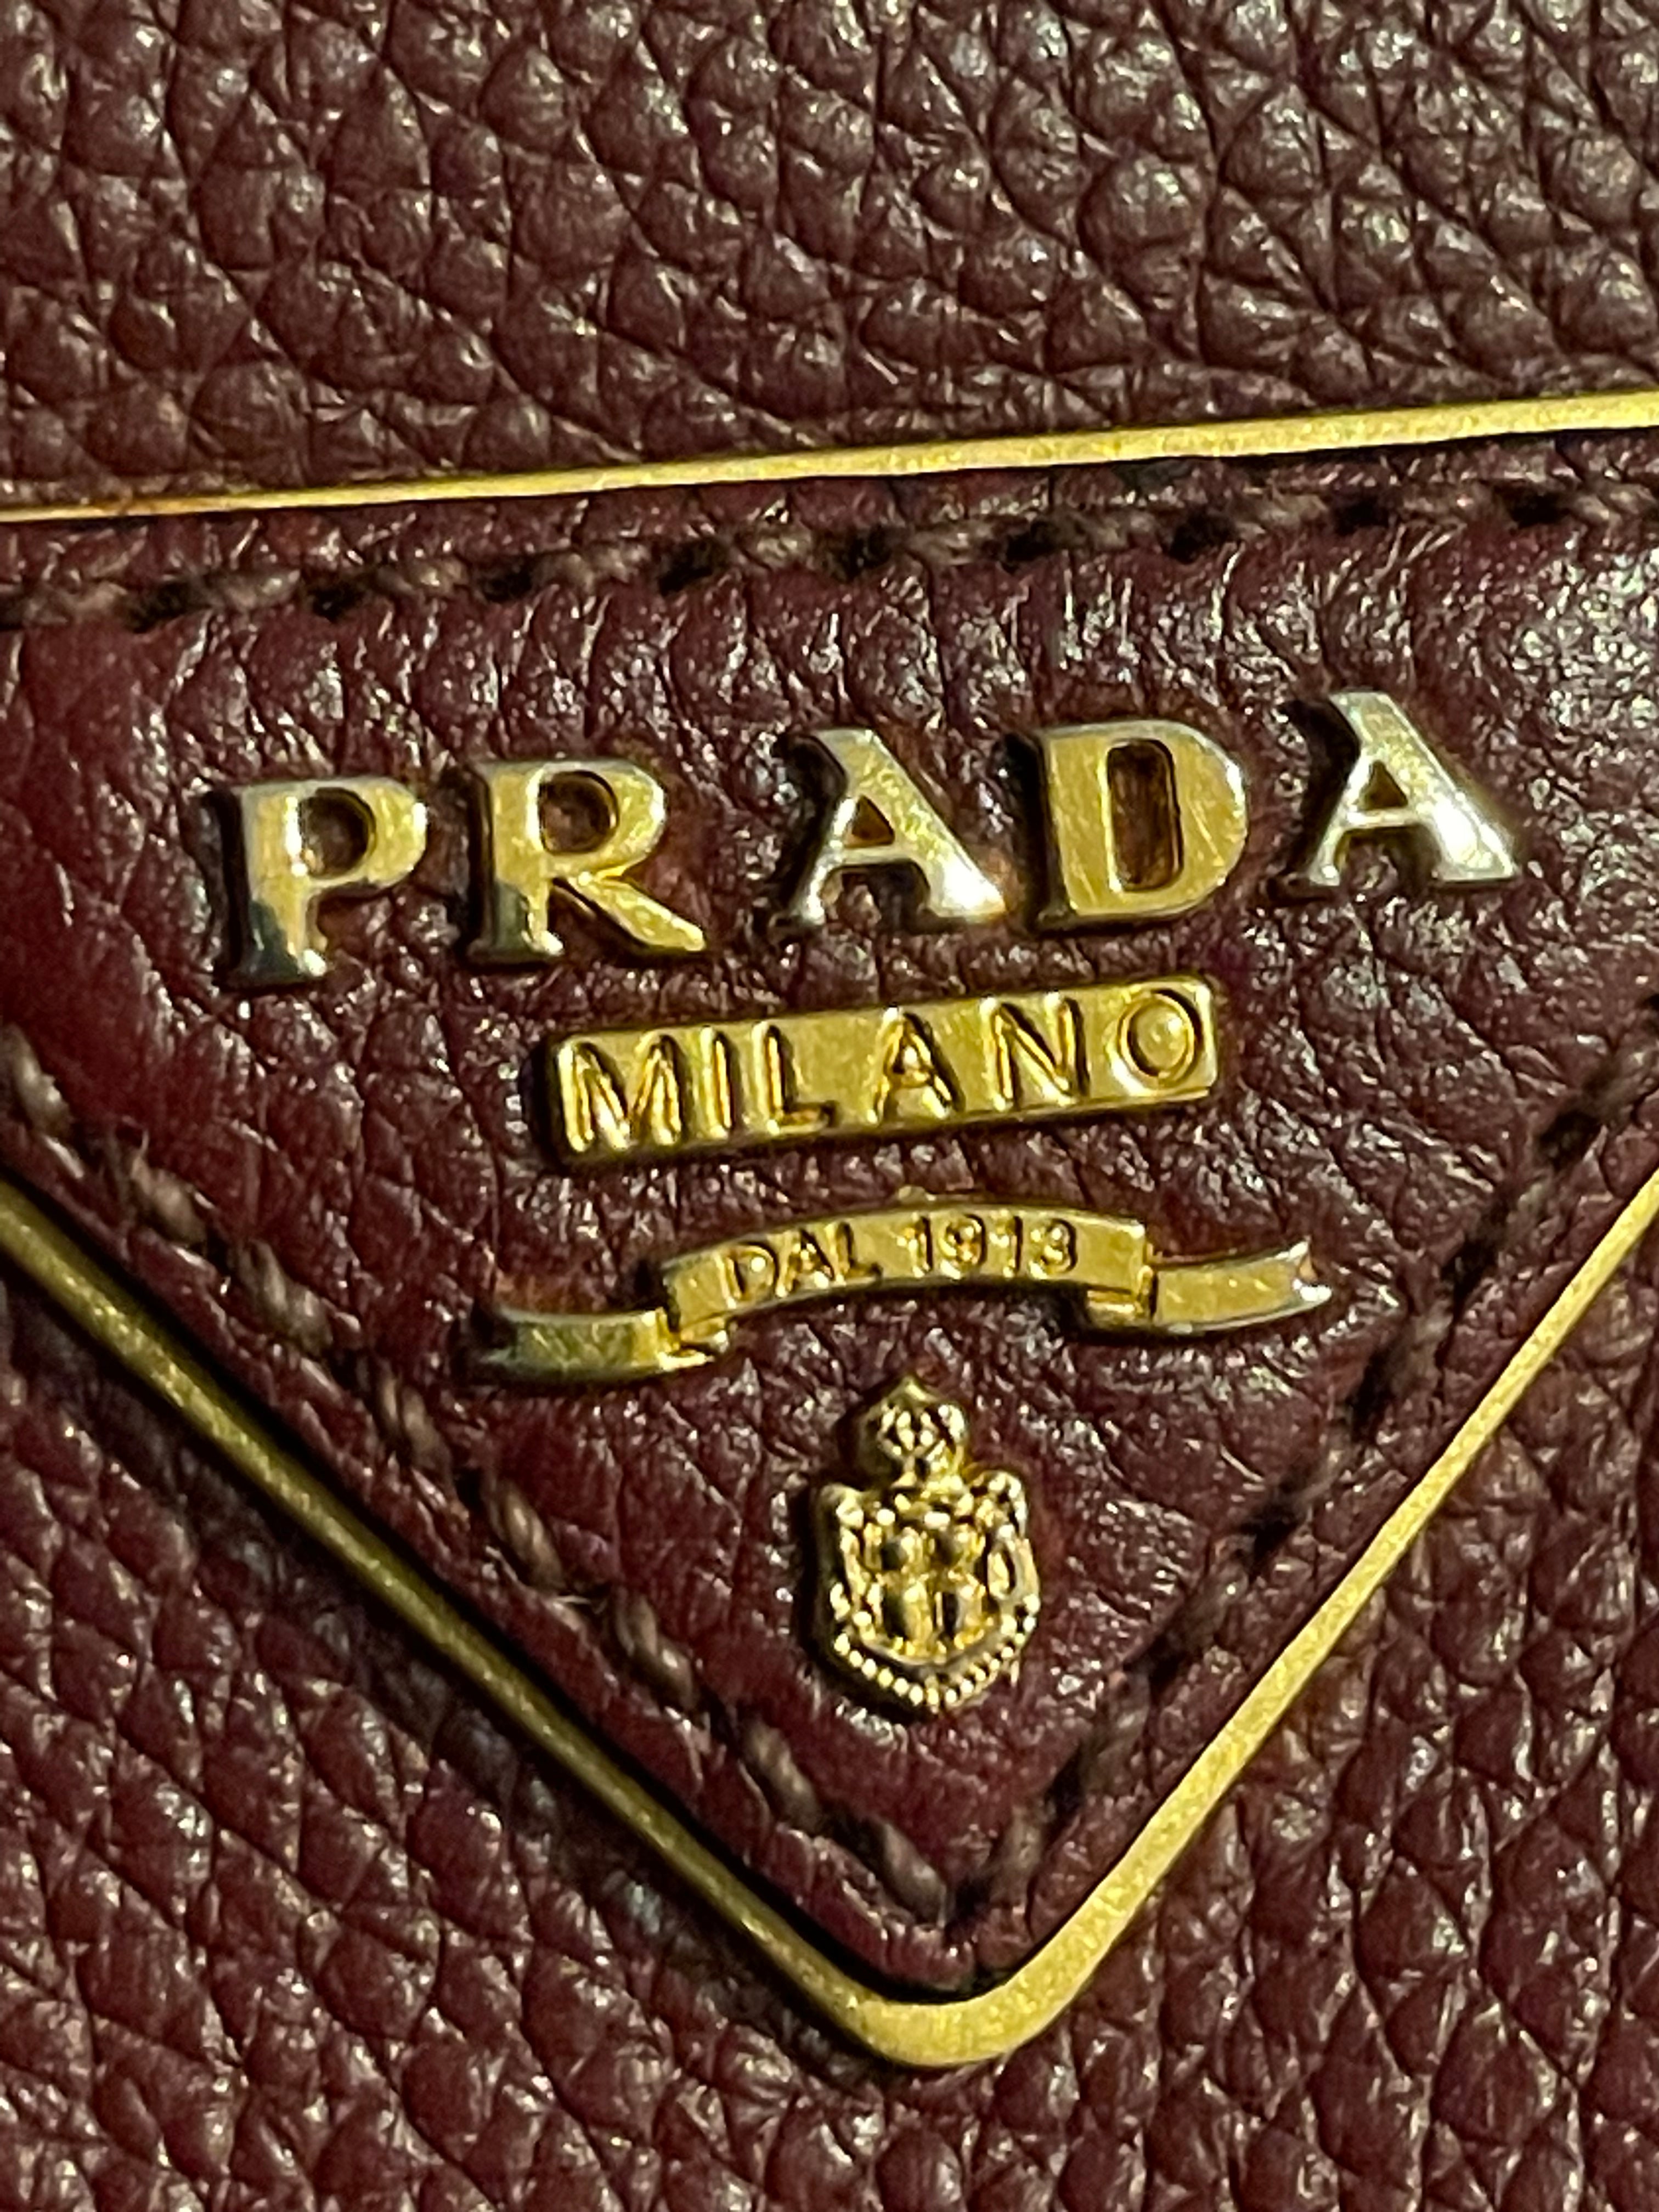 Prada Milano dal 1913 | Prada, Bags, Shoulder bag